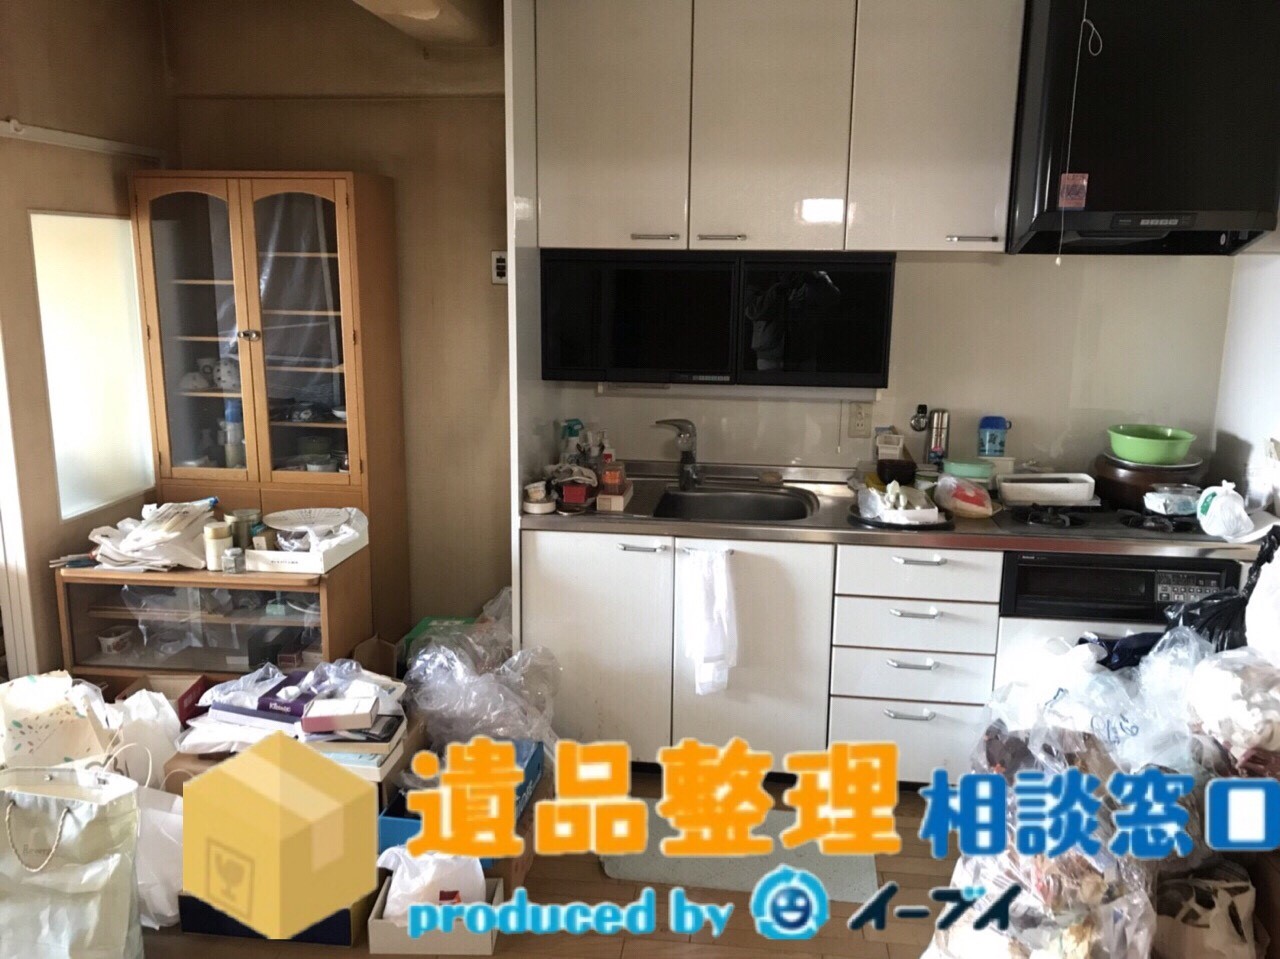 兵庫県伊丹市で生活用品や家財の処分の遺品整理をさせて頂きました。のアイキャッチ